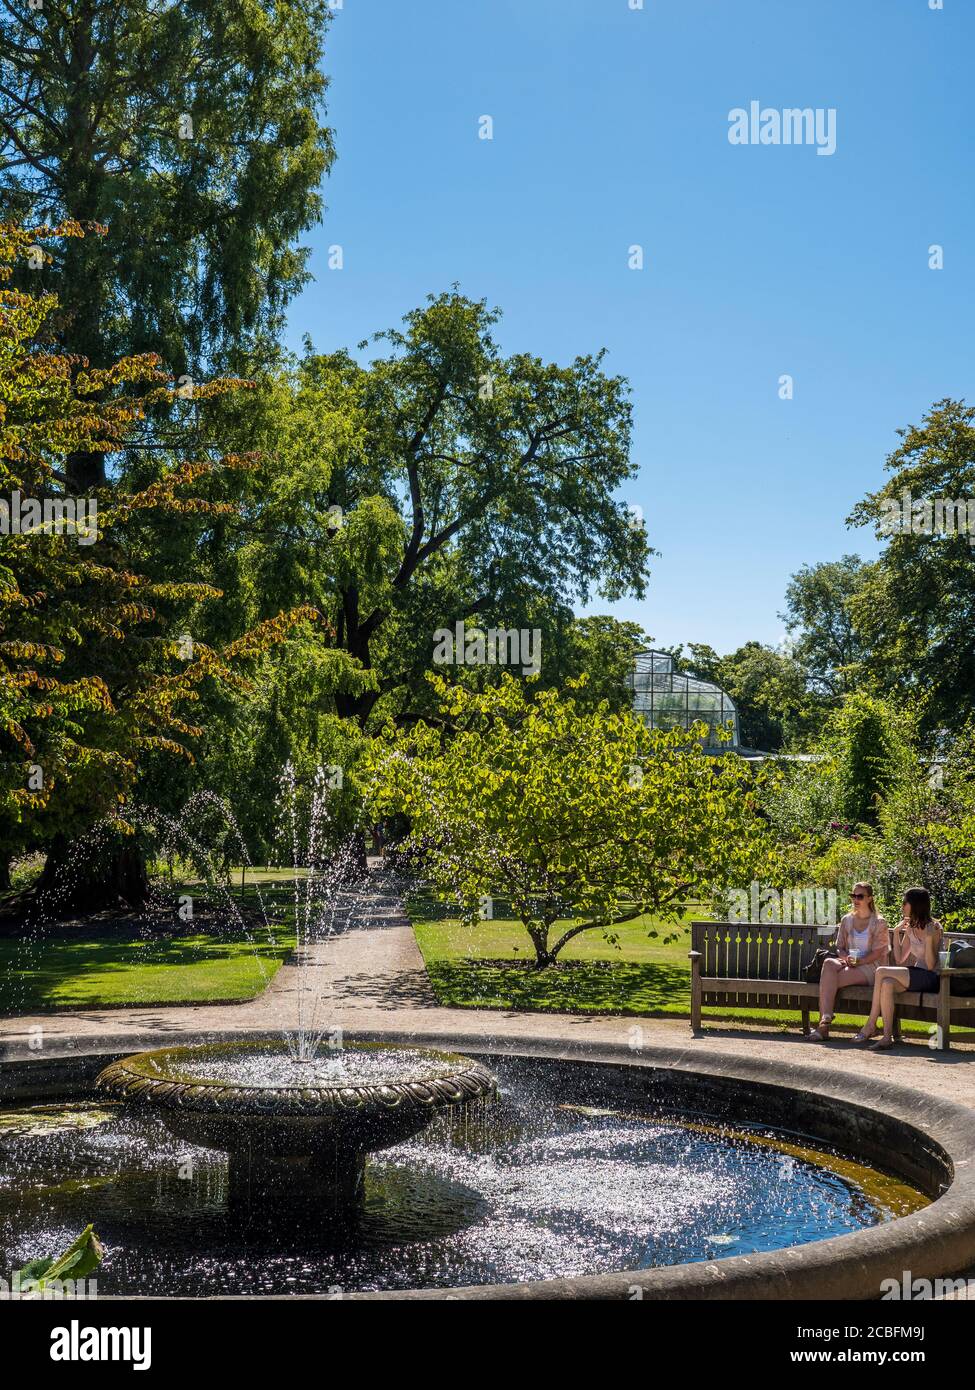 Dos mujeres jóvenes sentadas junto a la piscina con fuente, Universidad de Oxford Botanical Gardens, Oxford, Oxfordshire, Inglaterra, Reino Unido, GB. Foto de stock